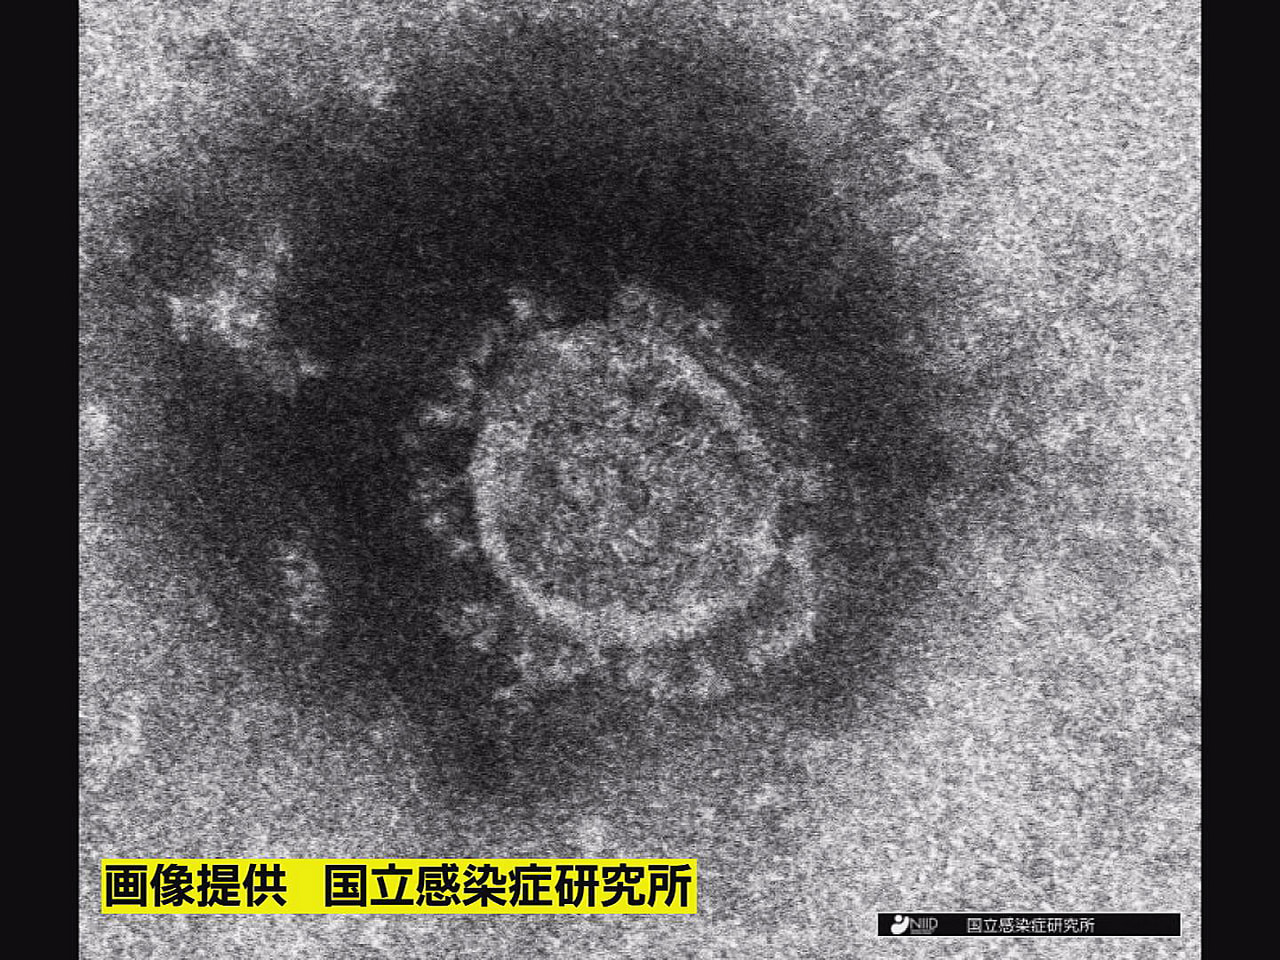 岐阜県は１２日、新型コロナウイルスの新規感染者が８４２人確認されたと発表しました...